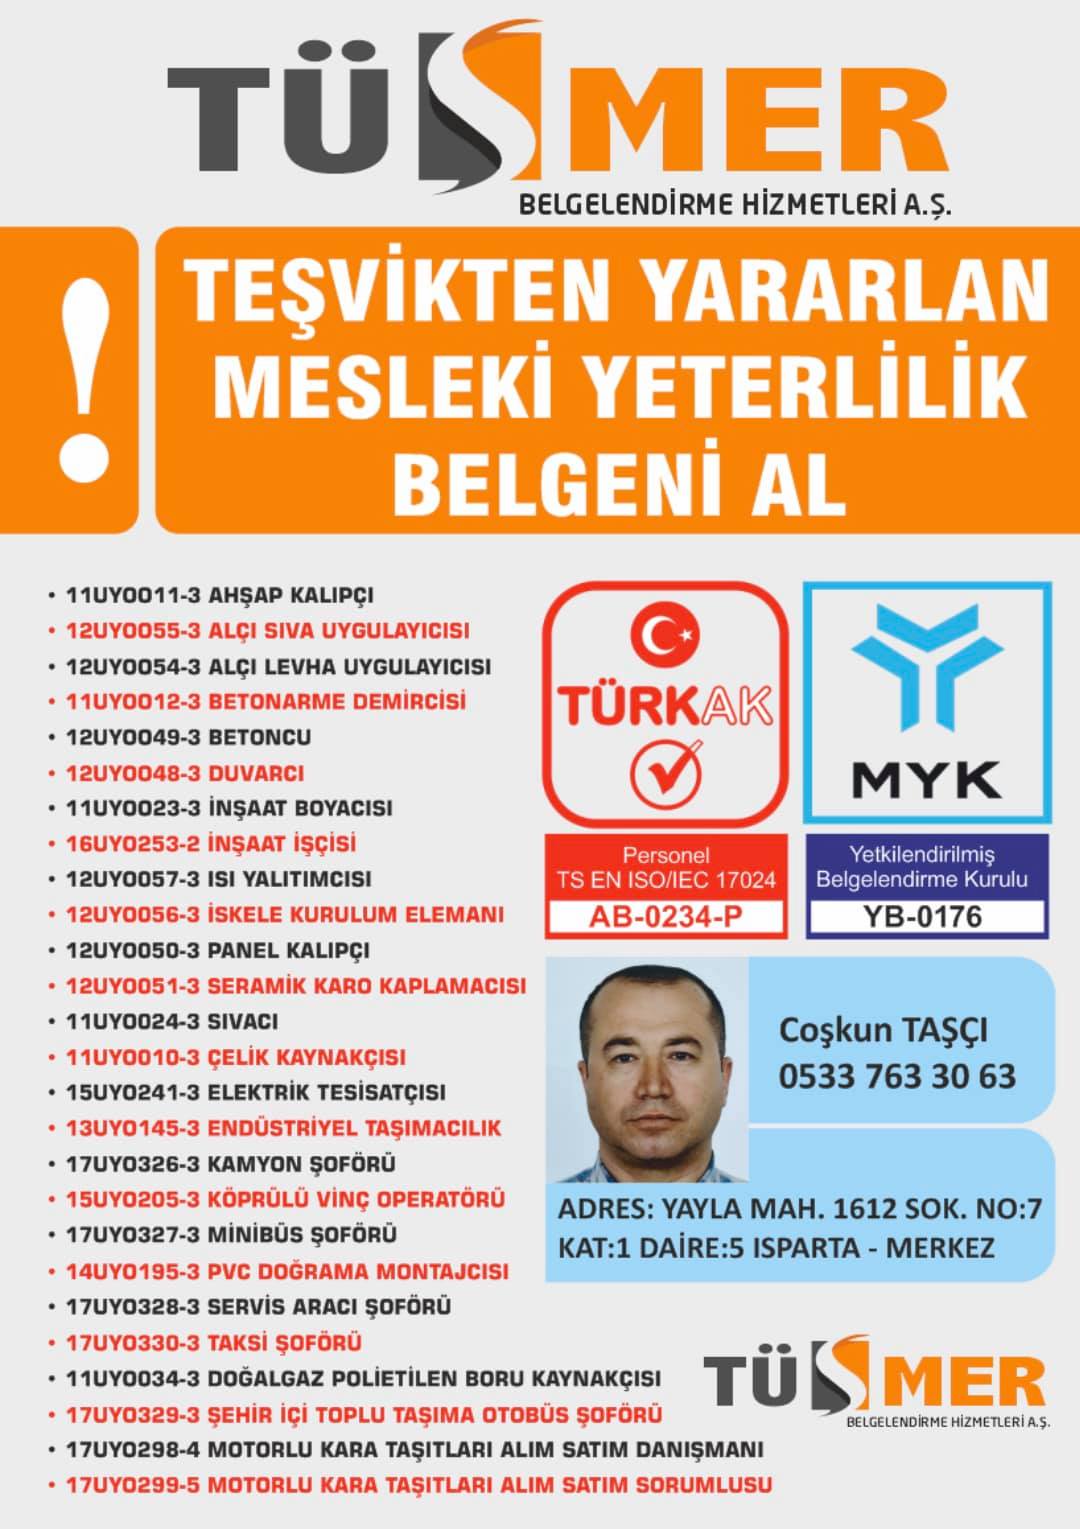 MYK MESLEKİ YETERLİLİK BELGESİ Yenimahalle Bakırköy İstanbul